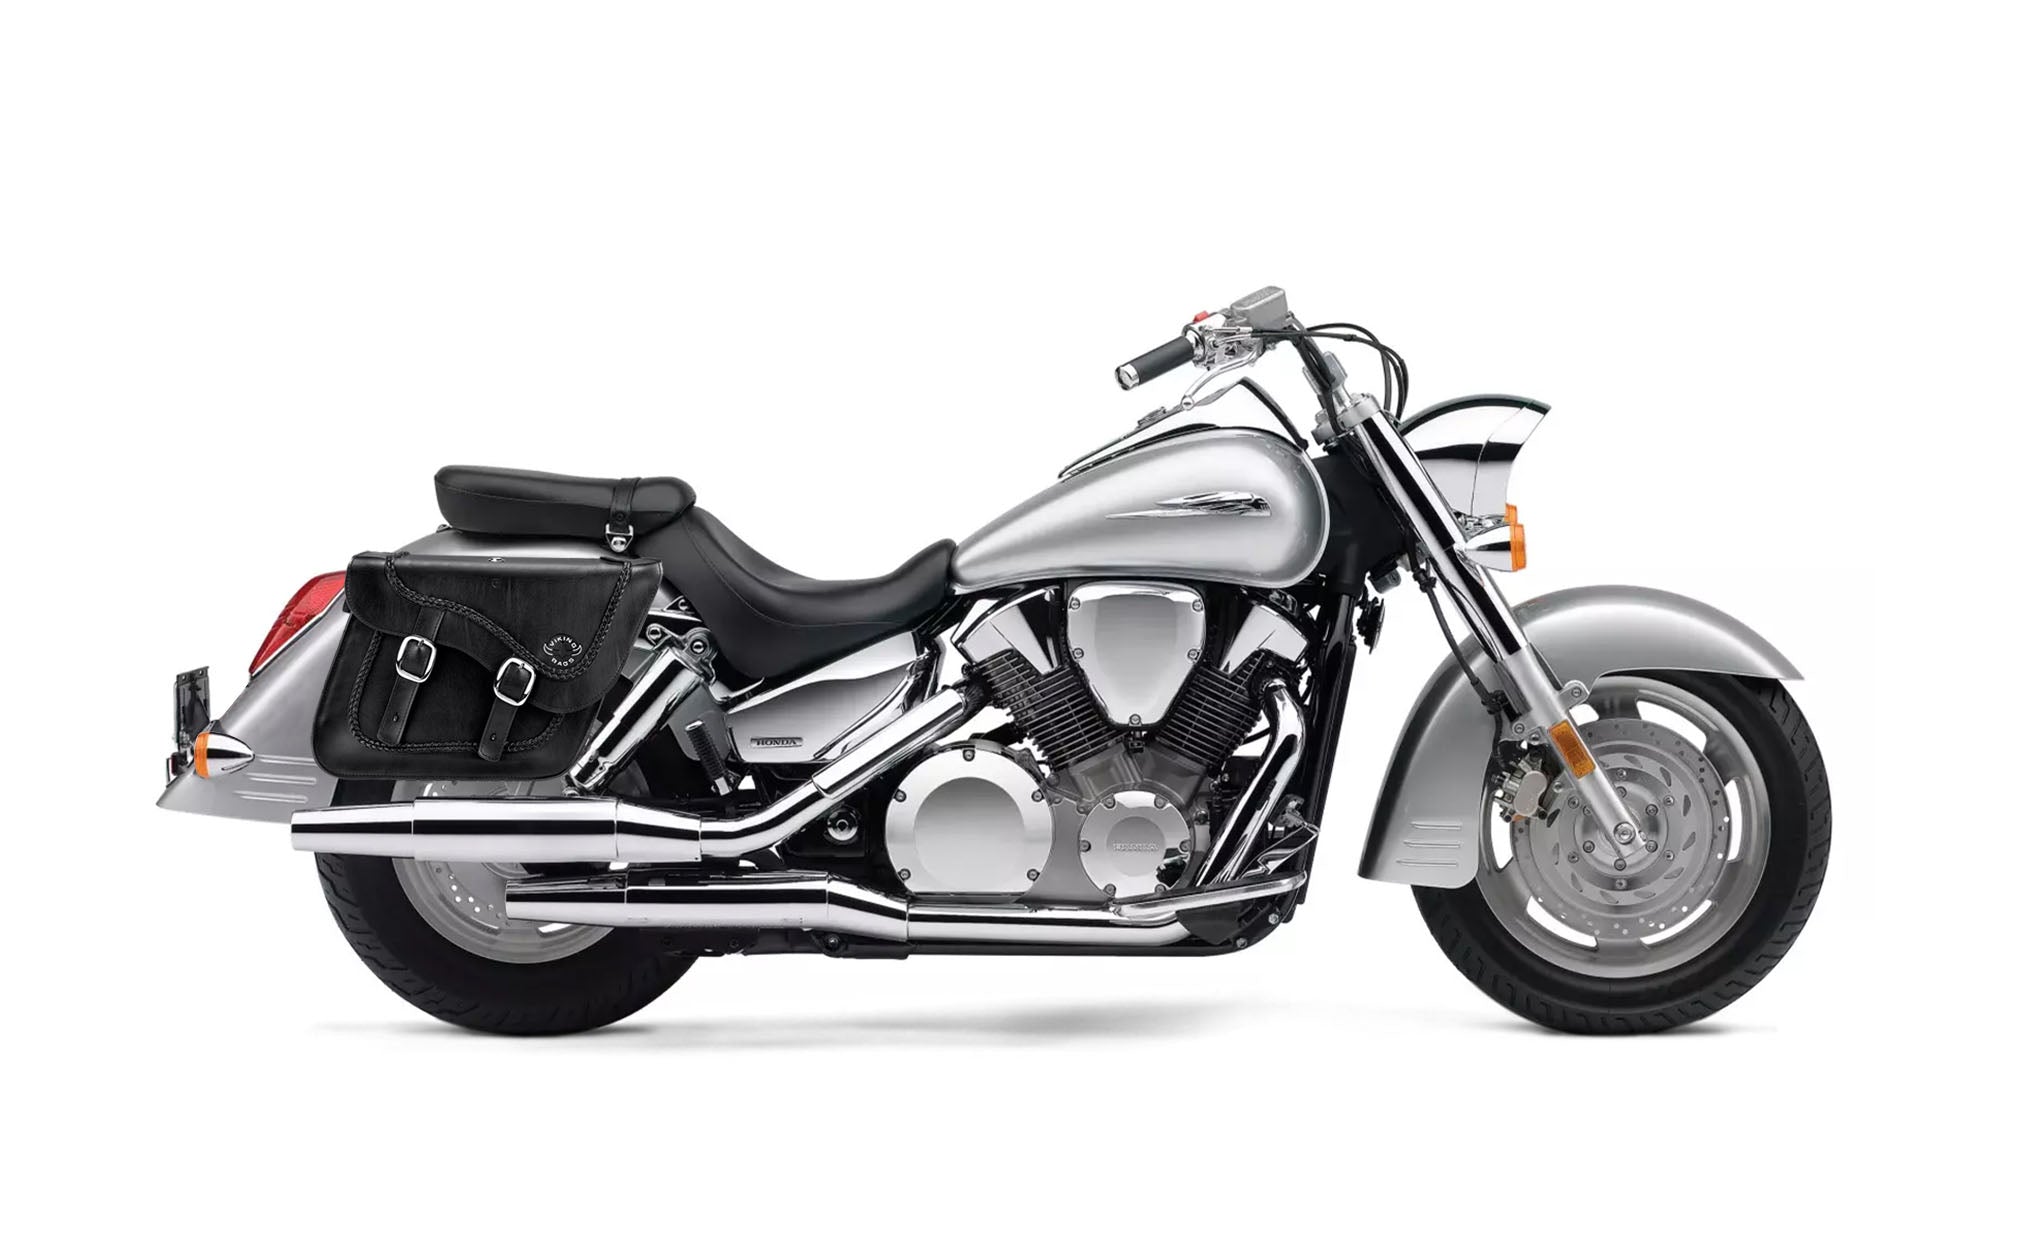 Viking Americano Honda Vtx 1300 S Braided Large Leather Motorcycle Saddlebags on Bike Photo @expand